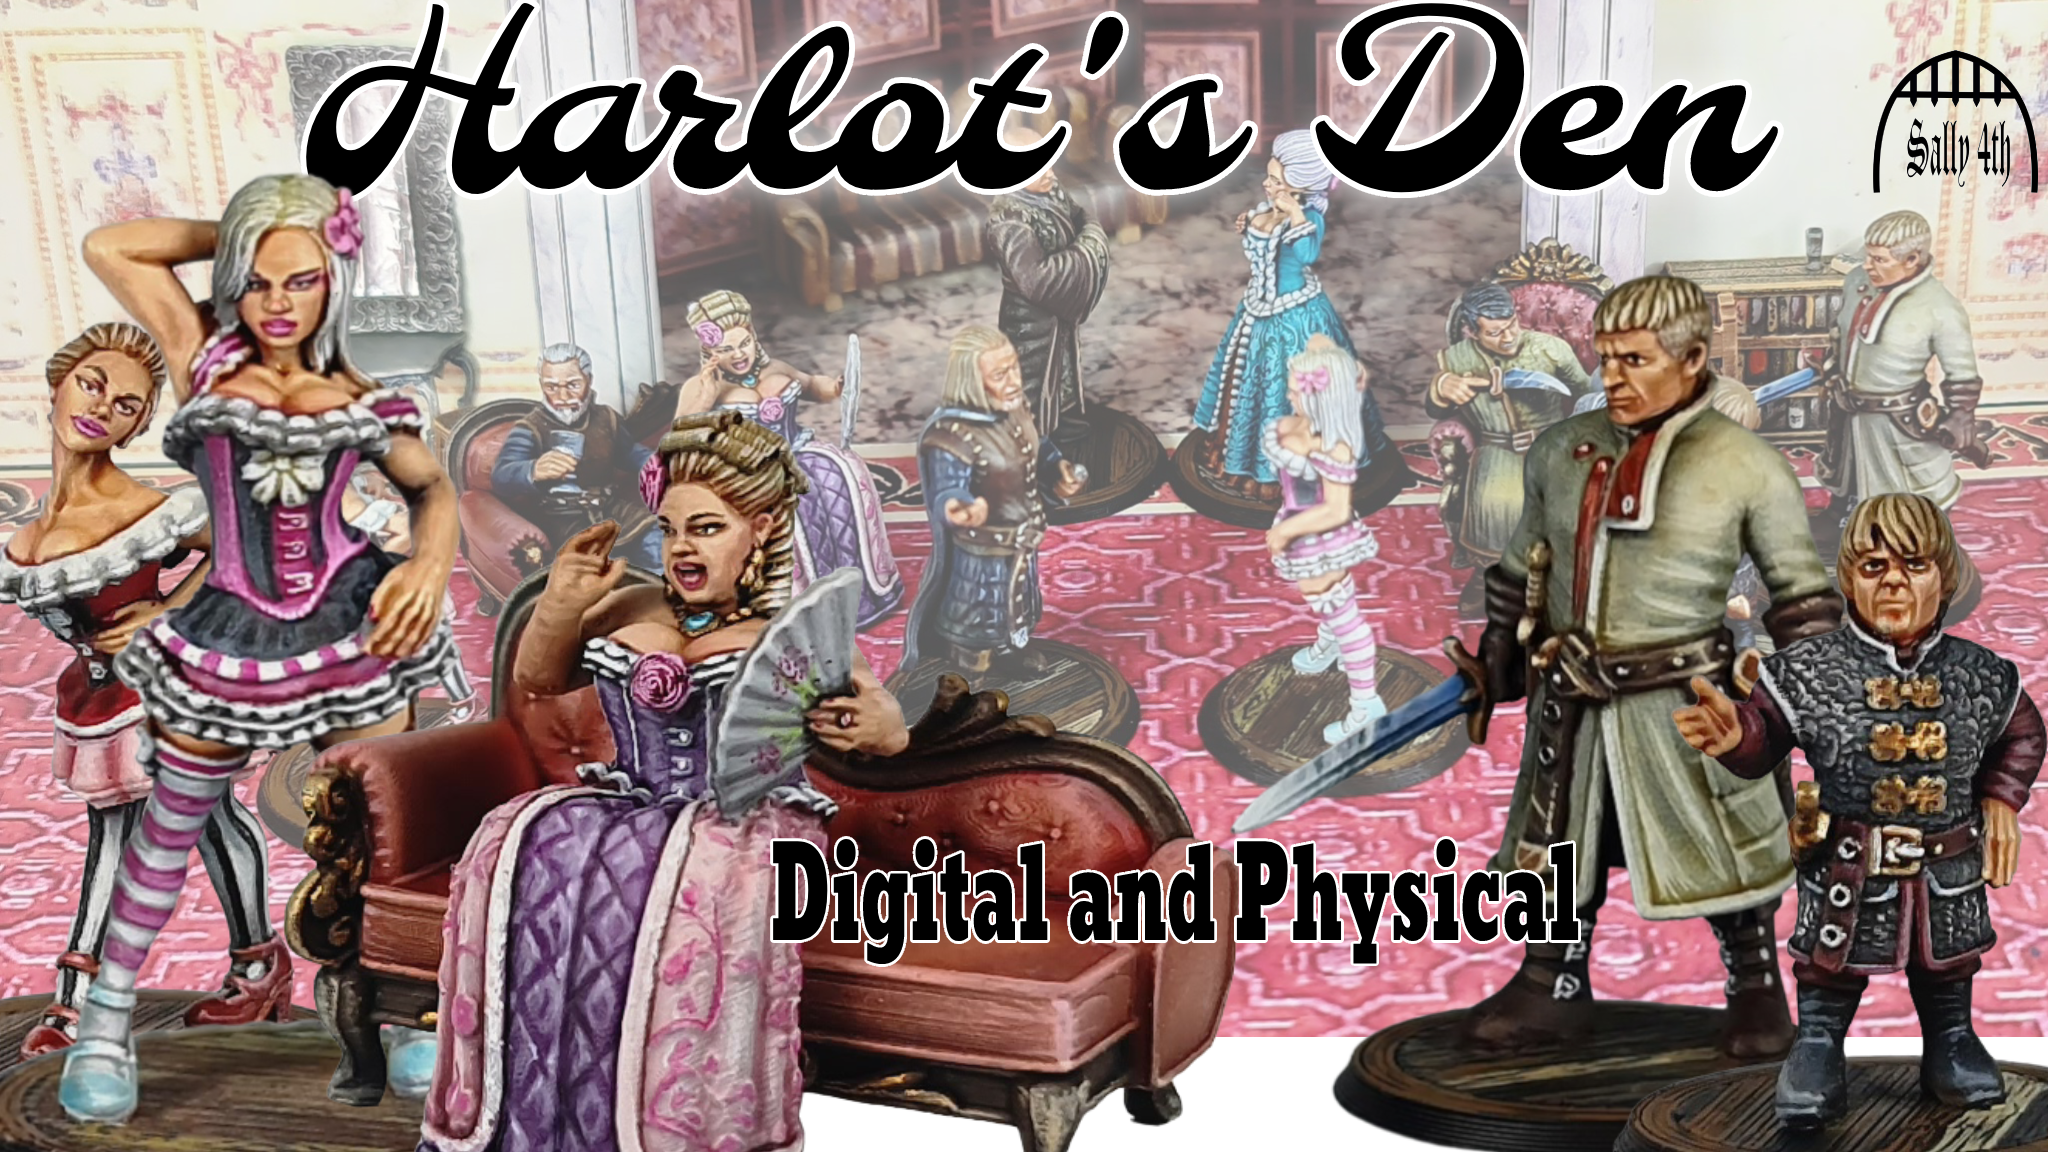 Harlot's Den - Digital